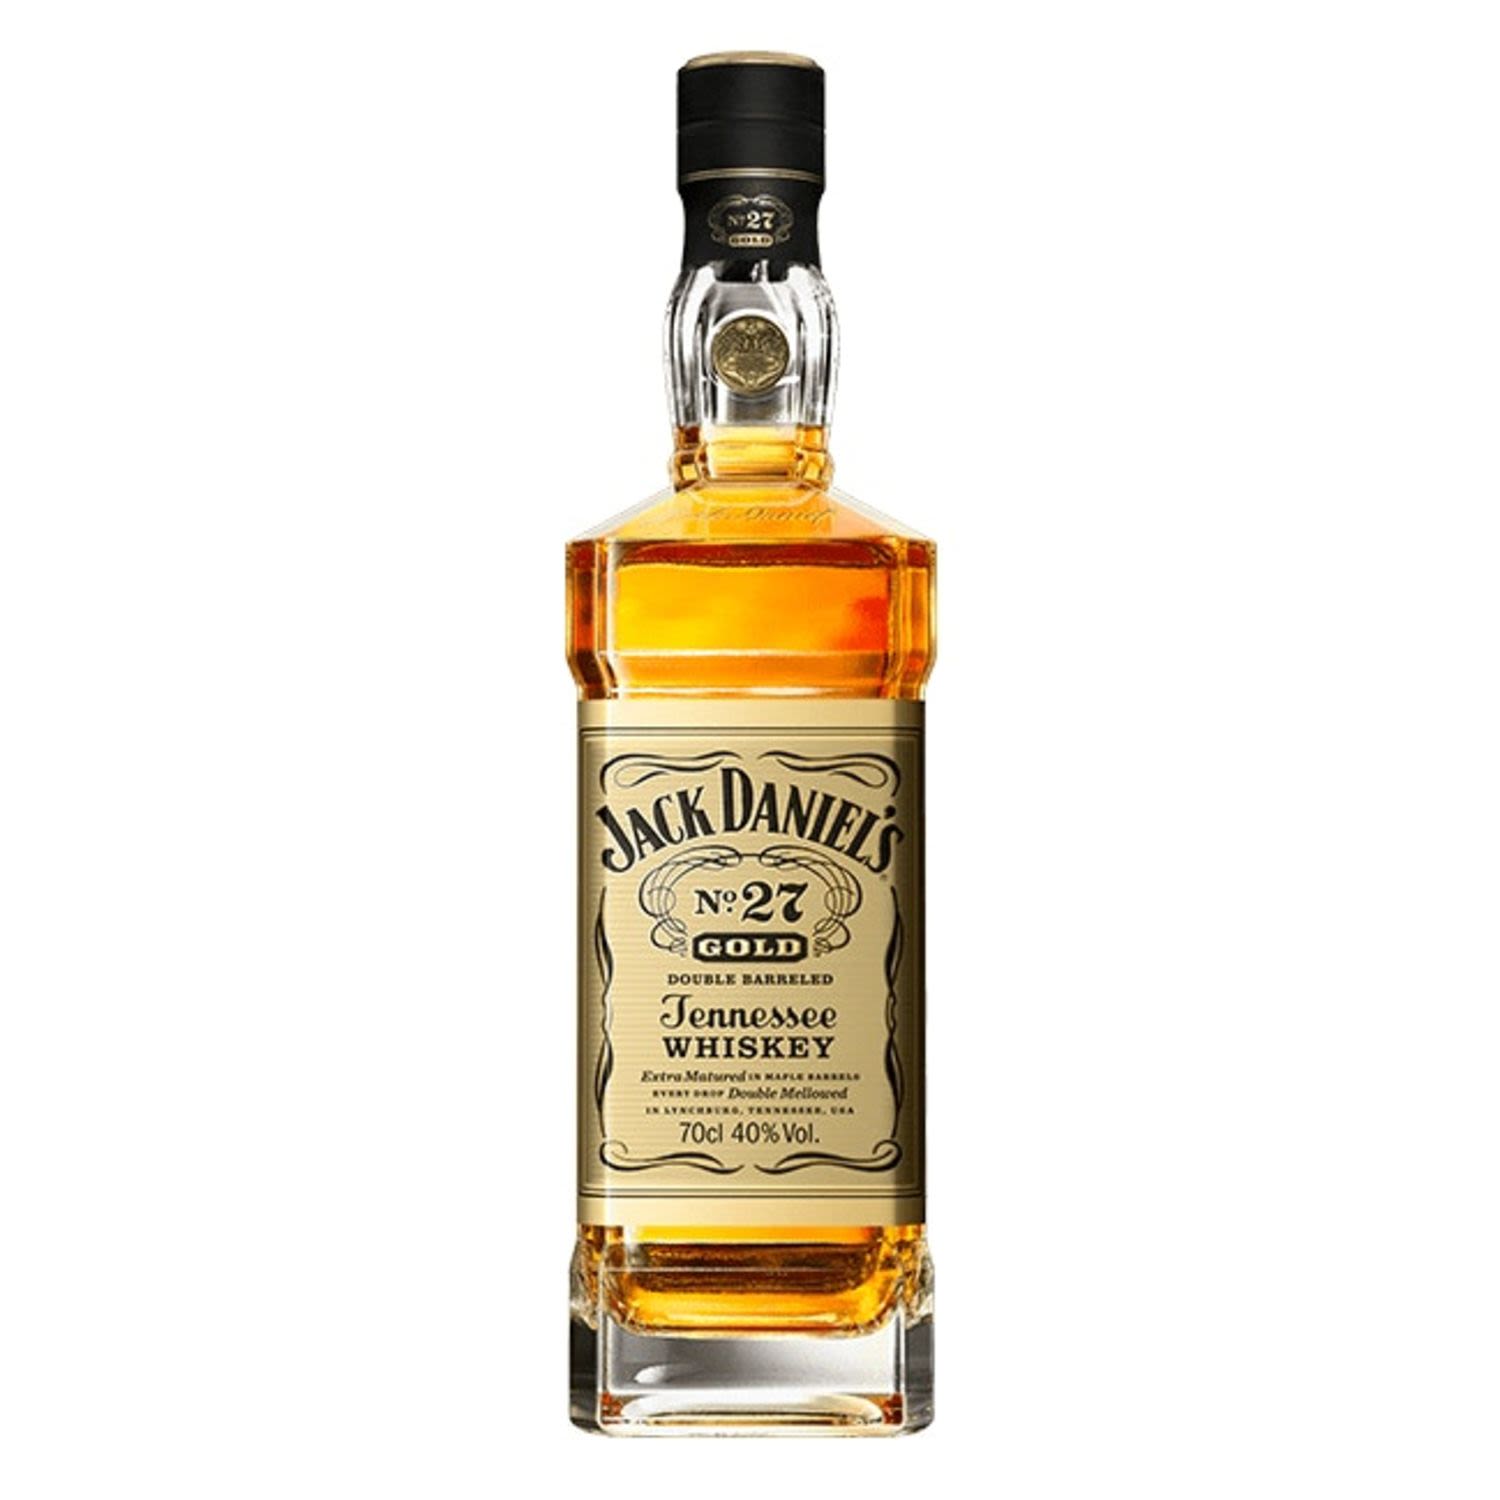 Jack Daniel's No 27 Gold Double Barreled 700mL Bottle